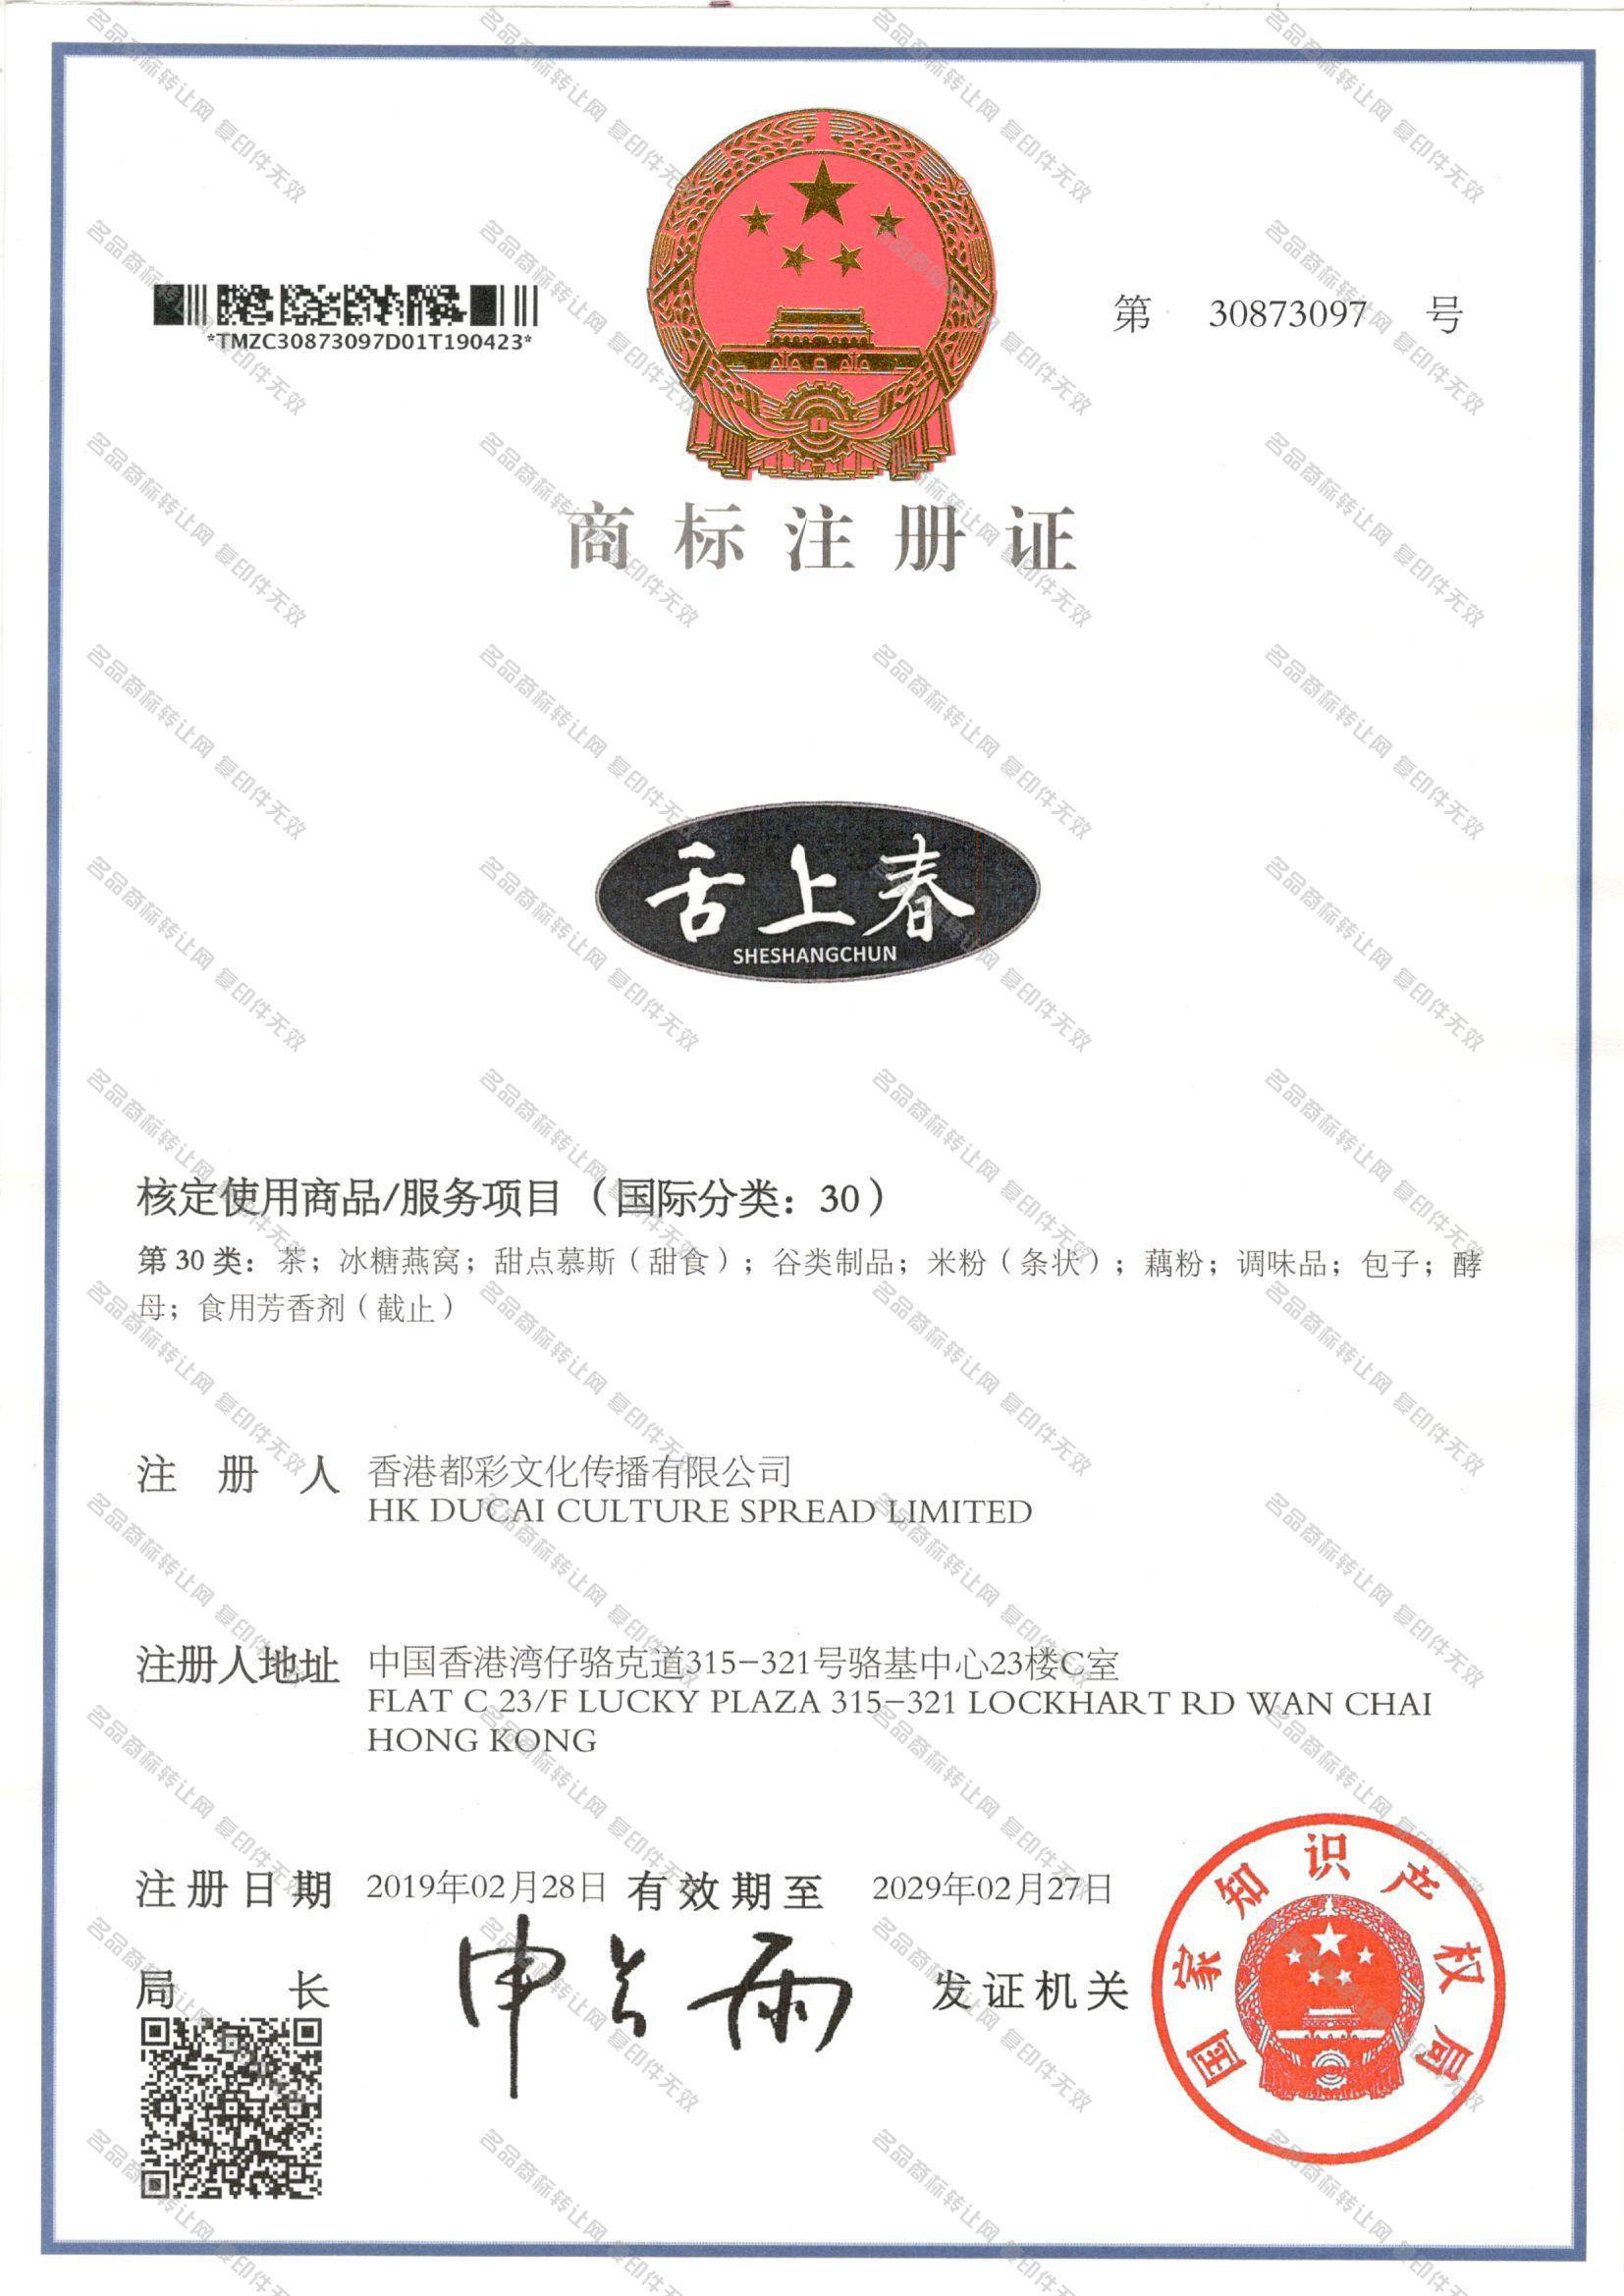 舌上春 SHESHANGCHUN注册证